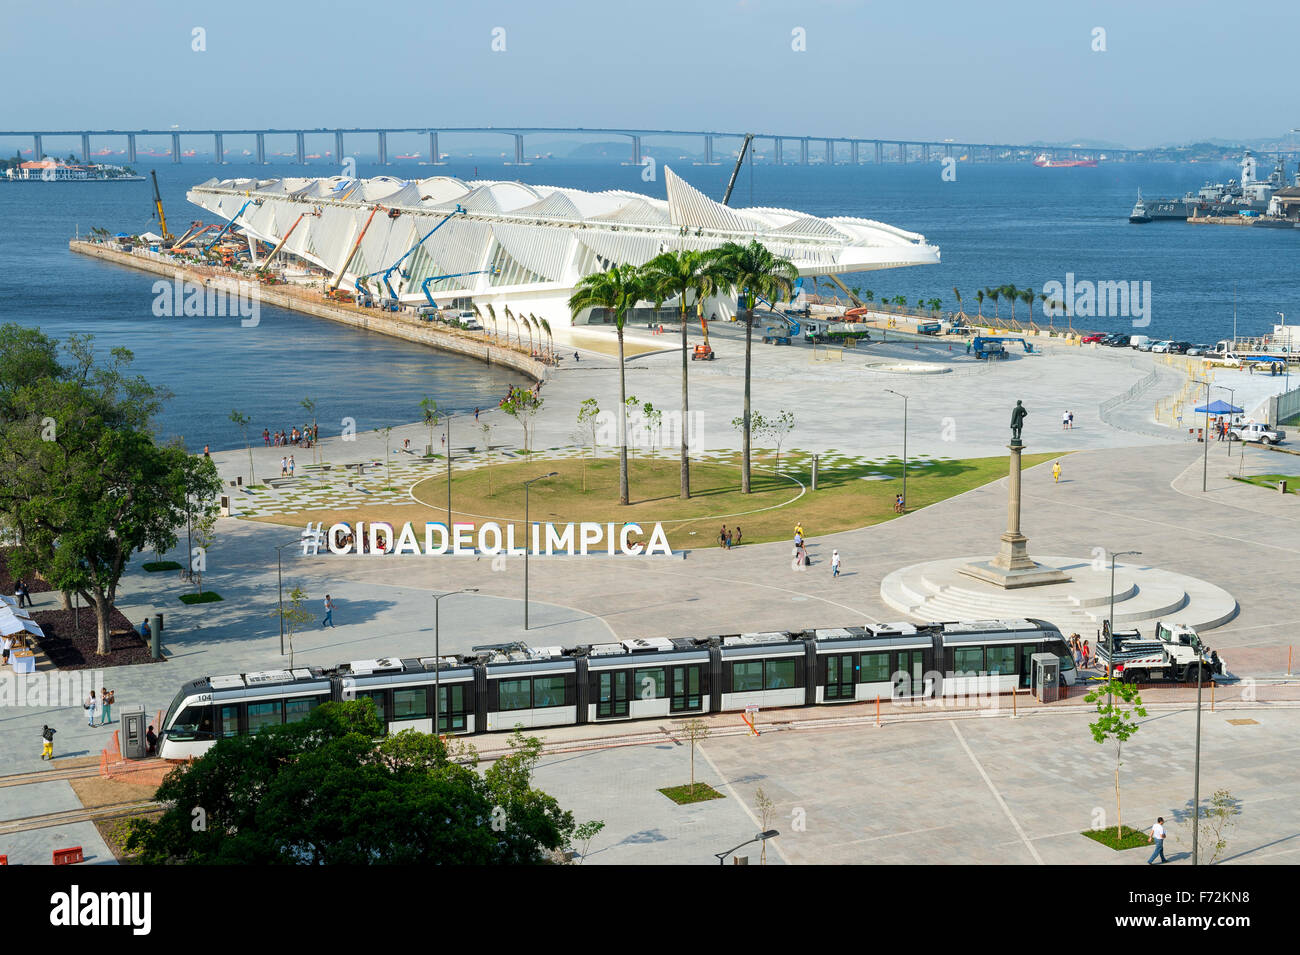 RIO DE JANEIRO, Brasile - 16 ottobre 2015: Grande segno #CIDADEOLIMPICA (città olimpica) sorge in Maua Plaza al Porto Maravilha Foto Stock